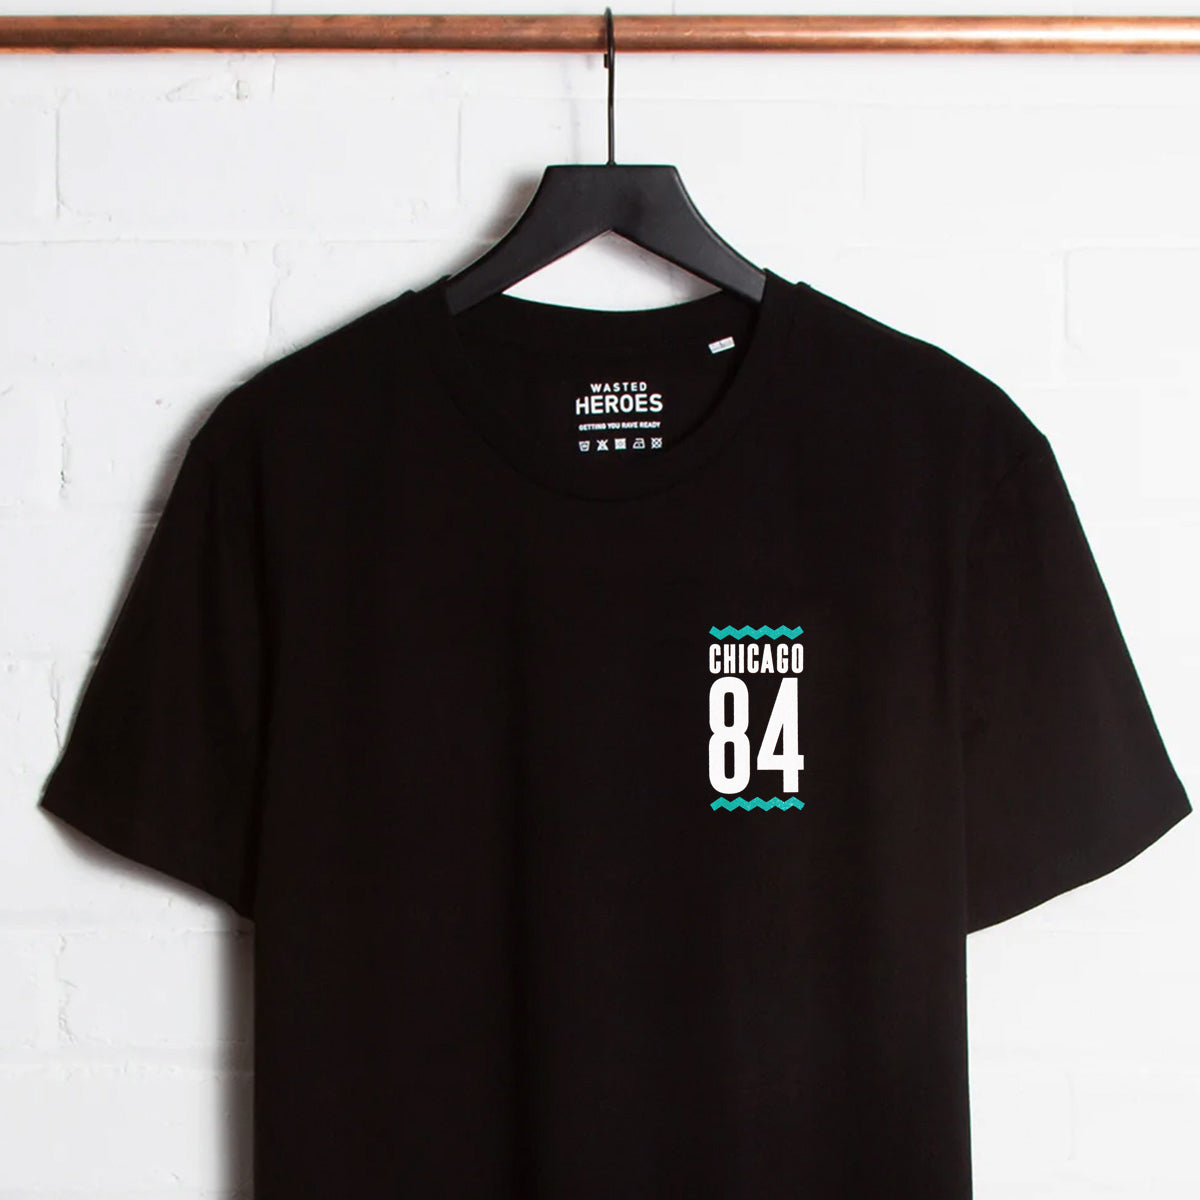 Crest Chicago84 - Tshirt - Black